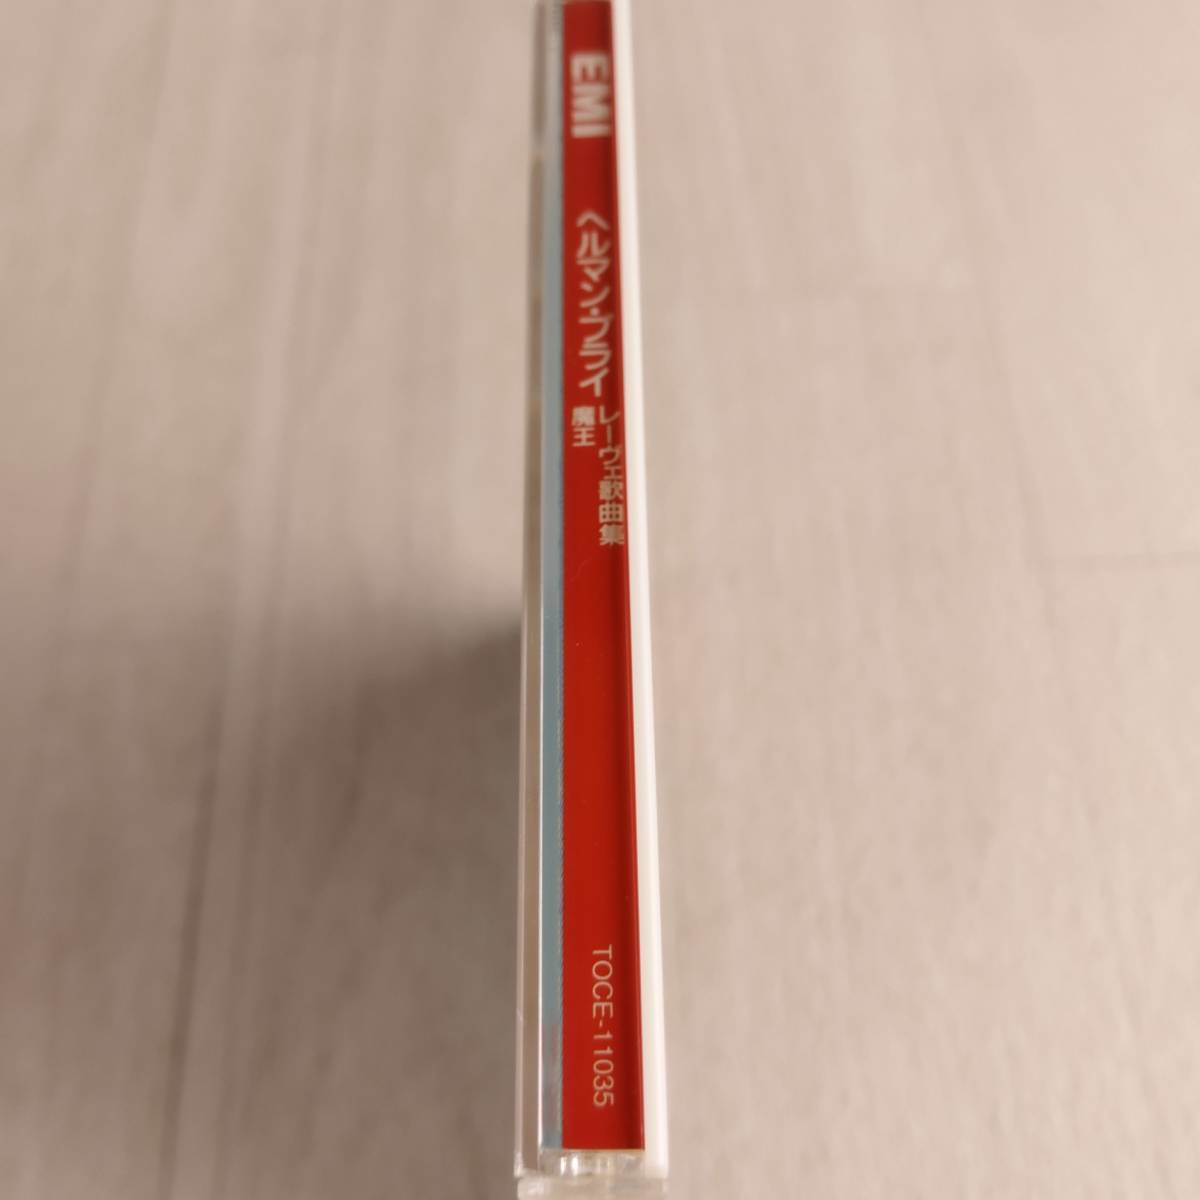 1MC11 CD ヘルマン・プライ ギュンター・ワイセンボルン 魔王 レーヴェ 歌曲集_画像5